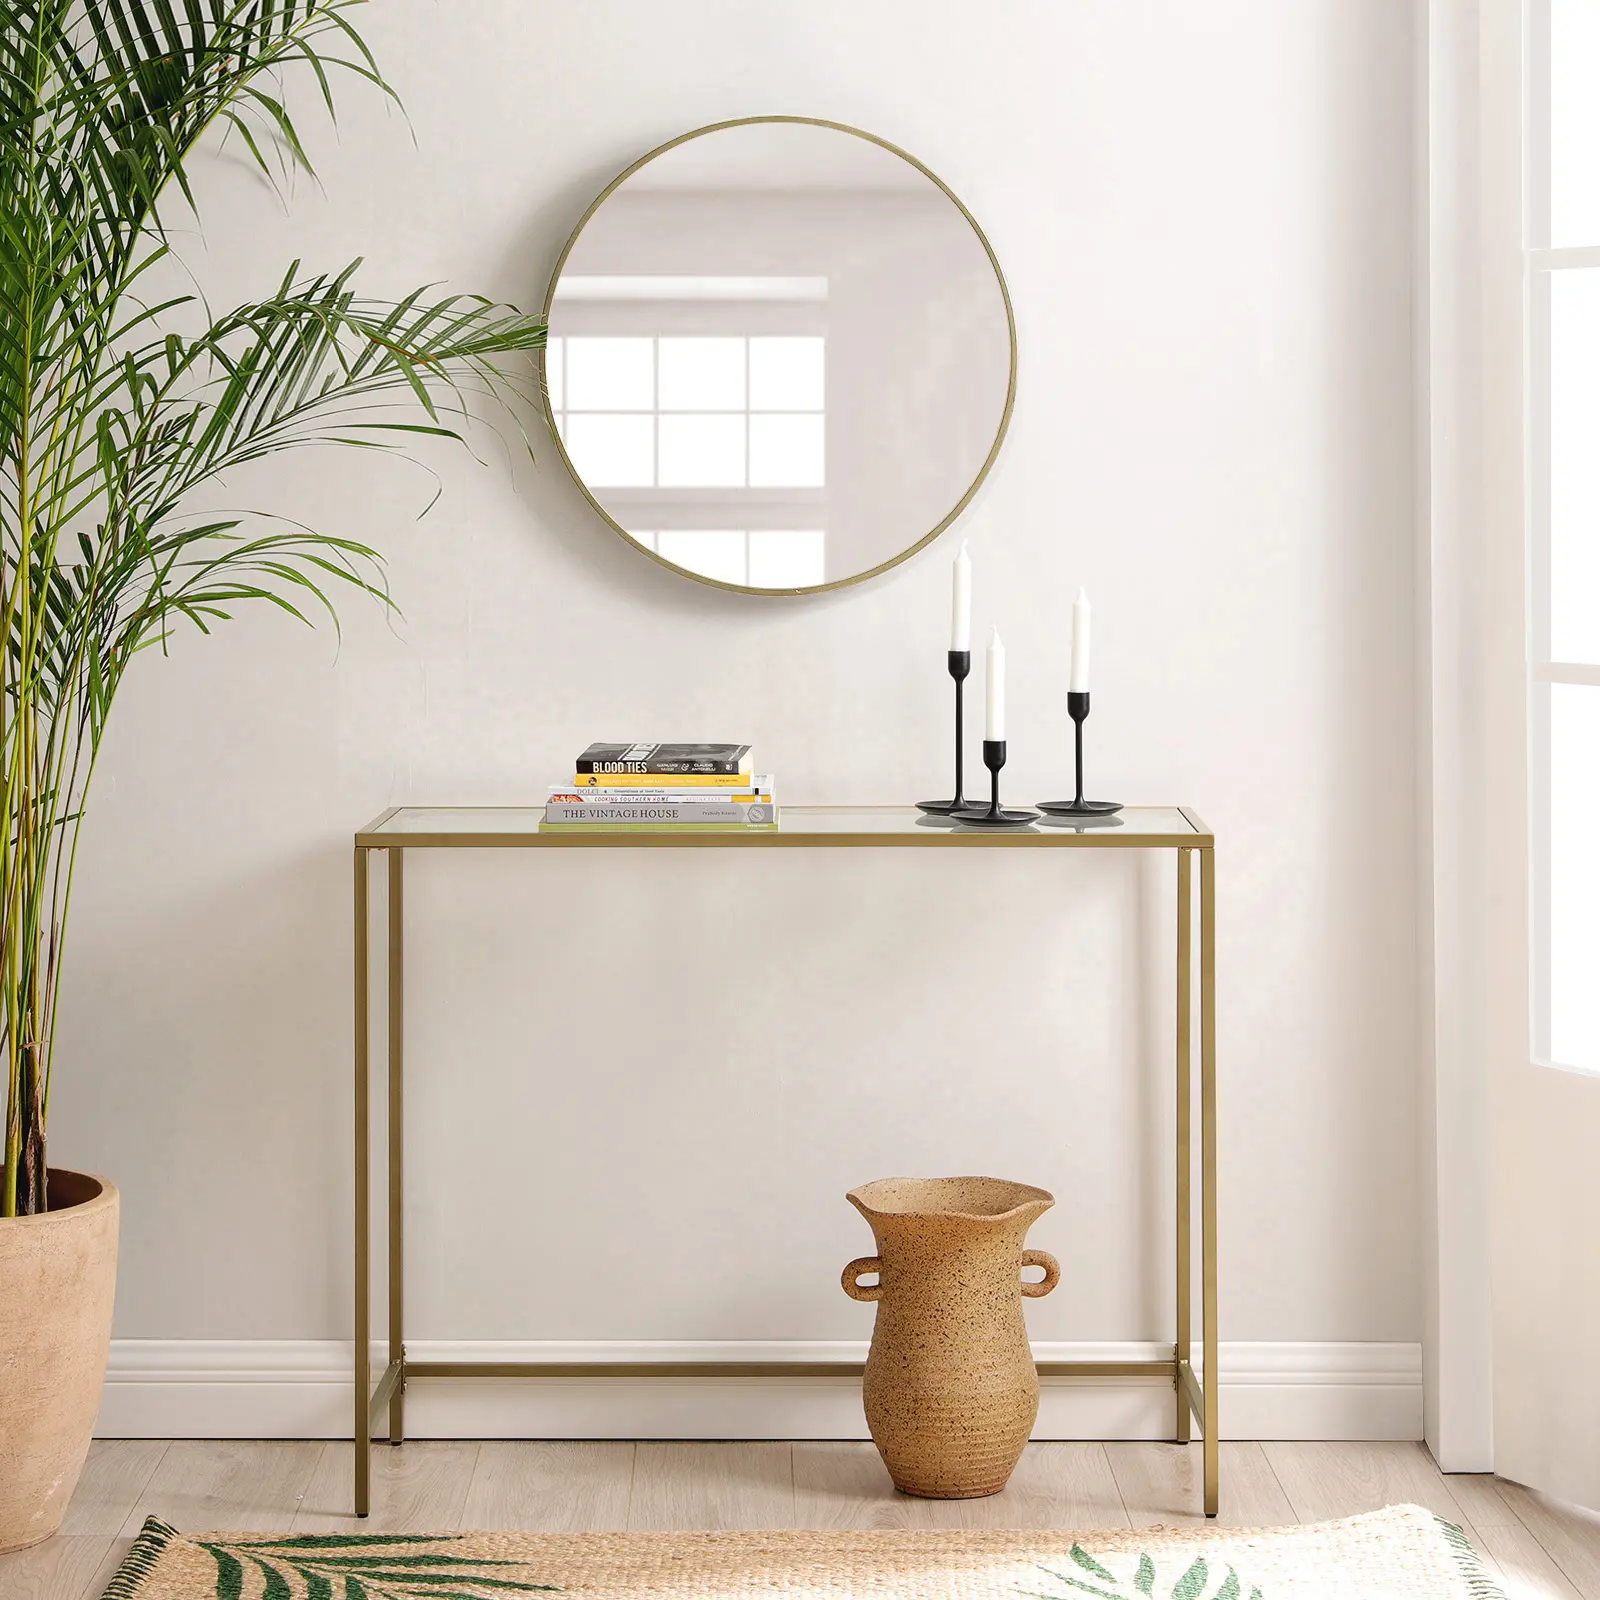 Tanggula Moderne Luxus möbel Weißgold Eck konsolen tische Wohnzimmer Flur Glas Edelstahl Konsolen tische